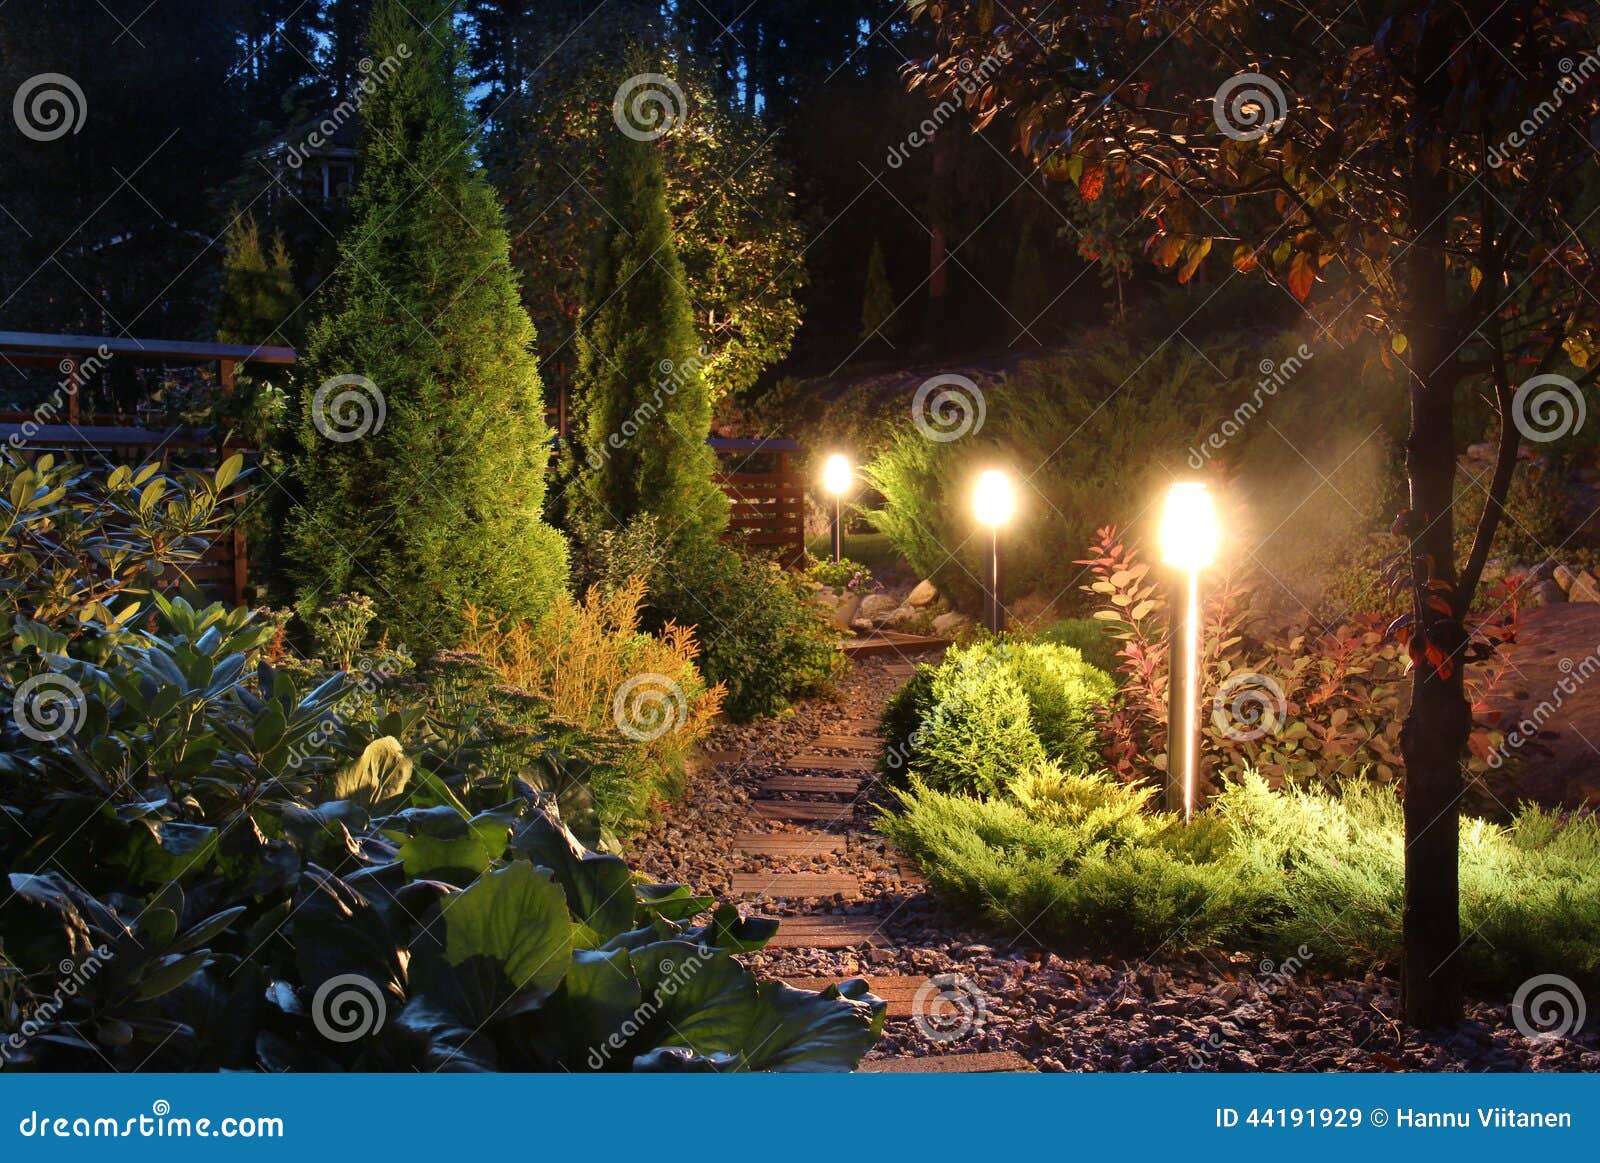 illuminated garden path patio